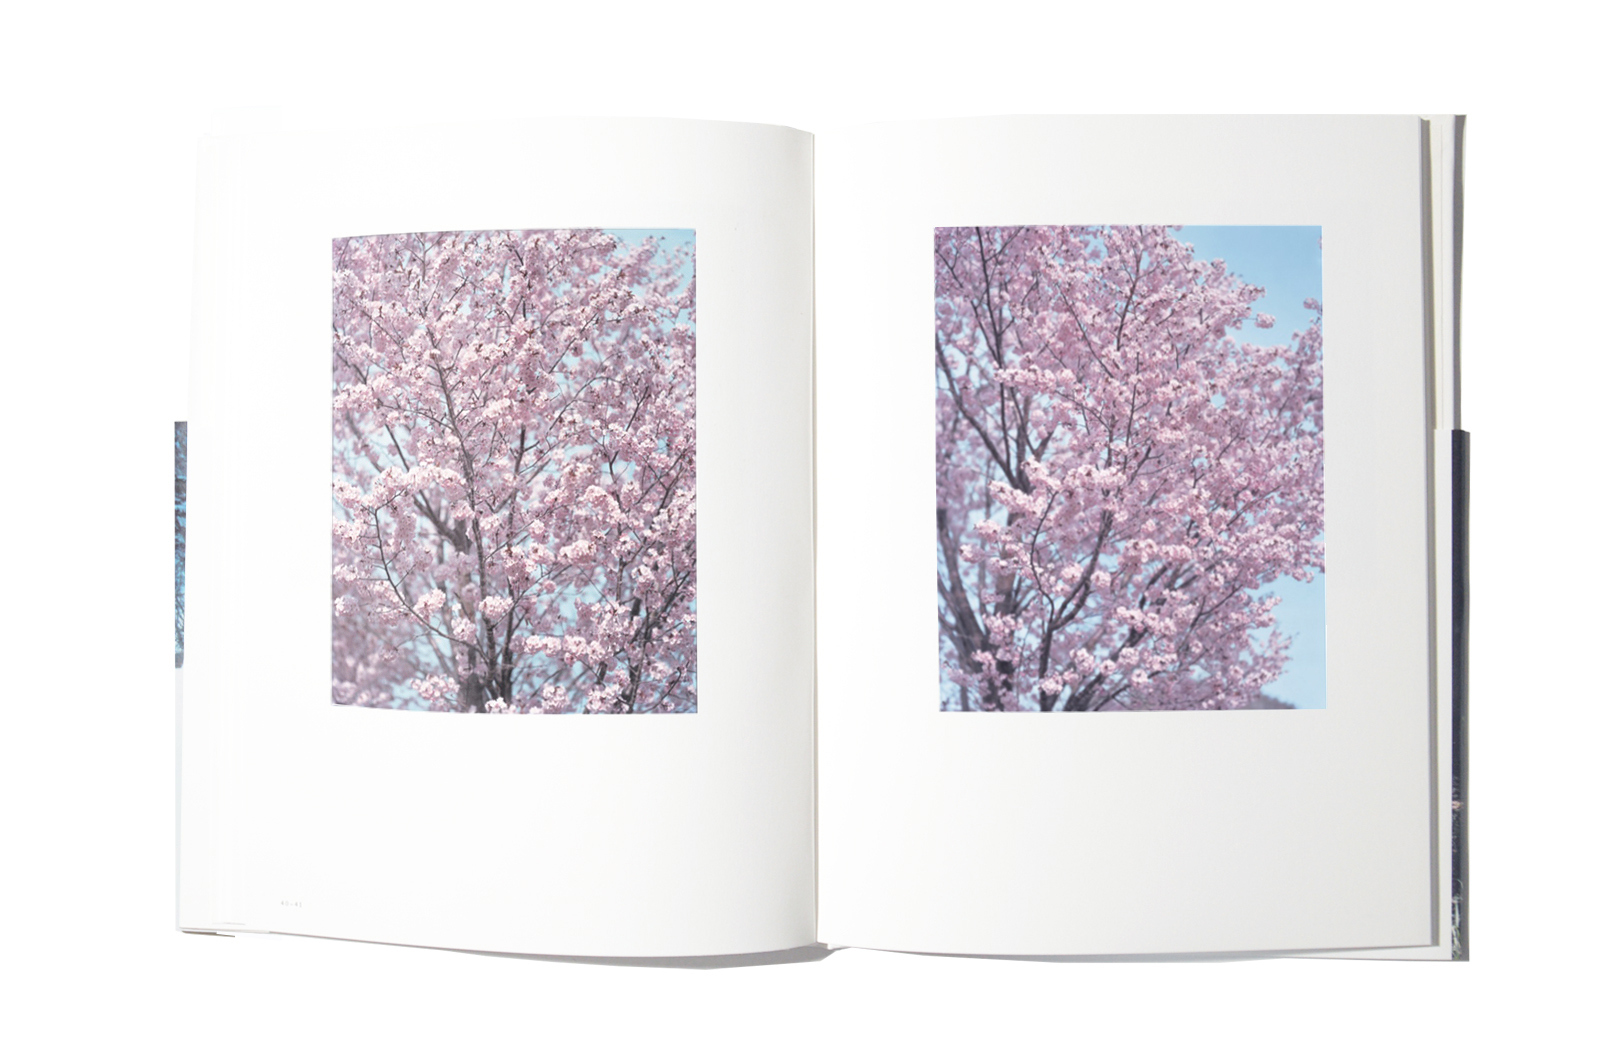 Risaku Suzuki – Winter to Spring